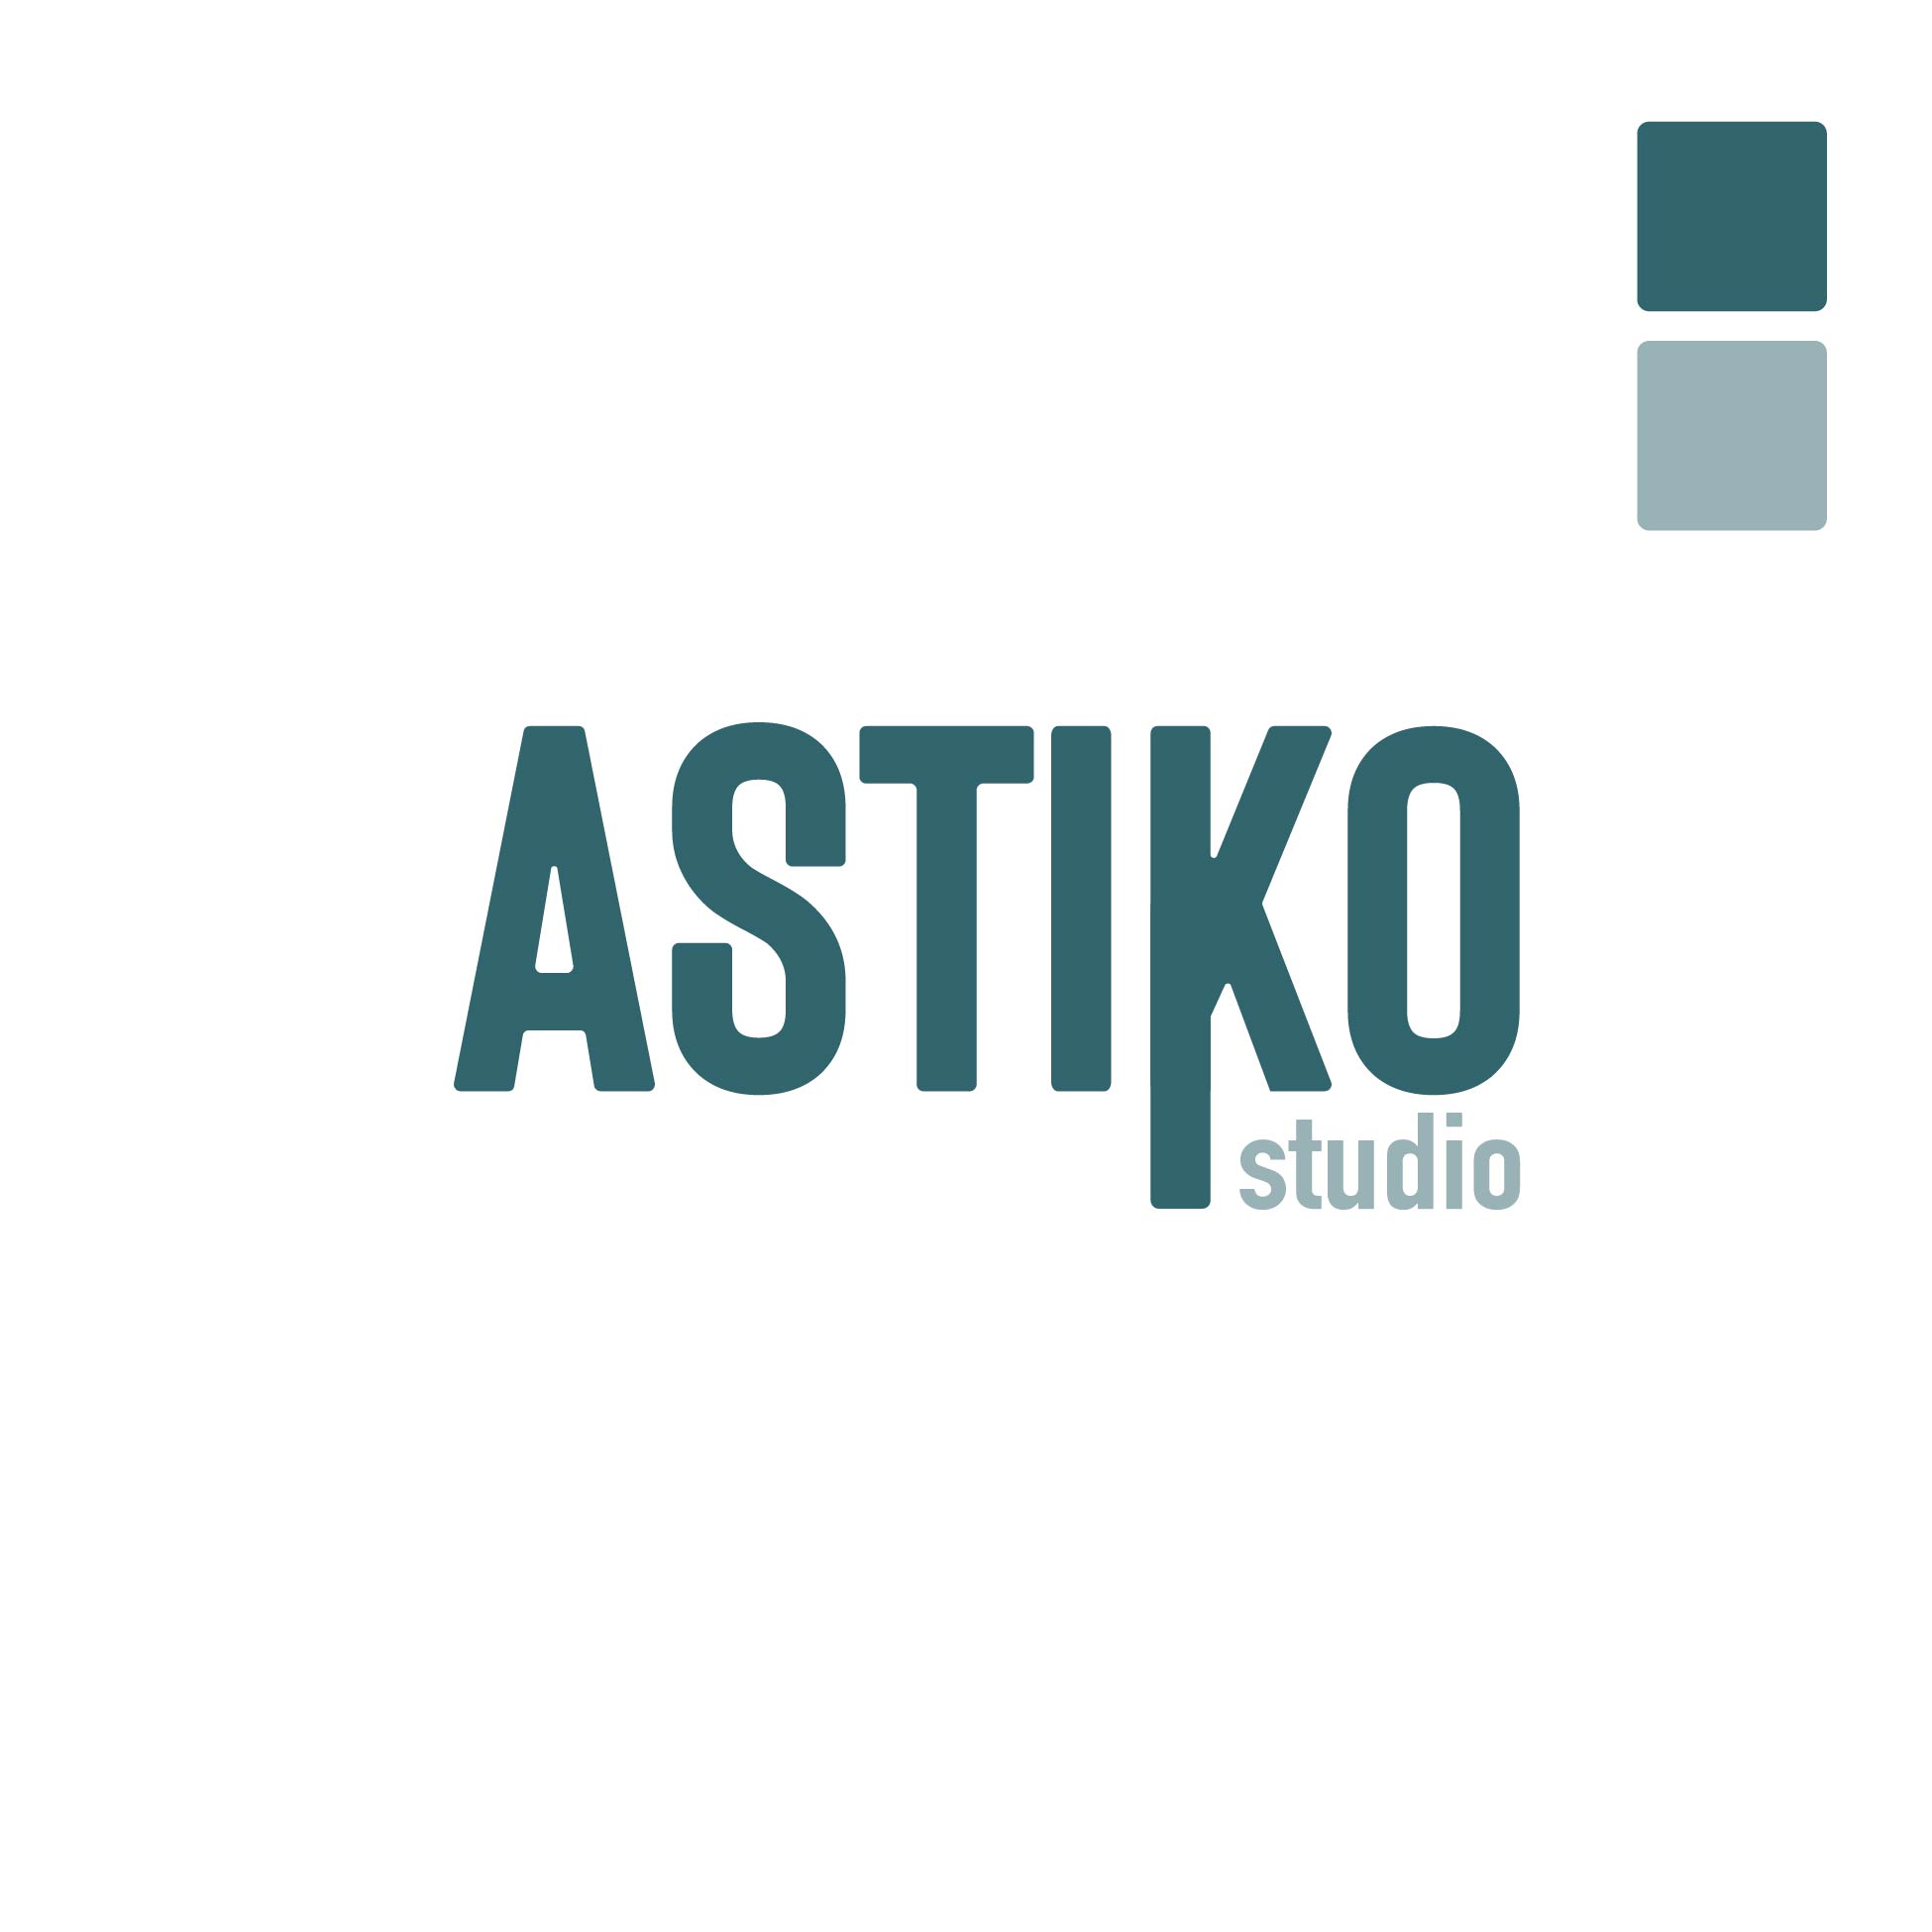 AstiKo Studio - Camille Chauvelin - Graphiste